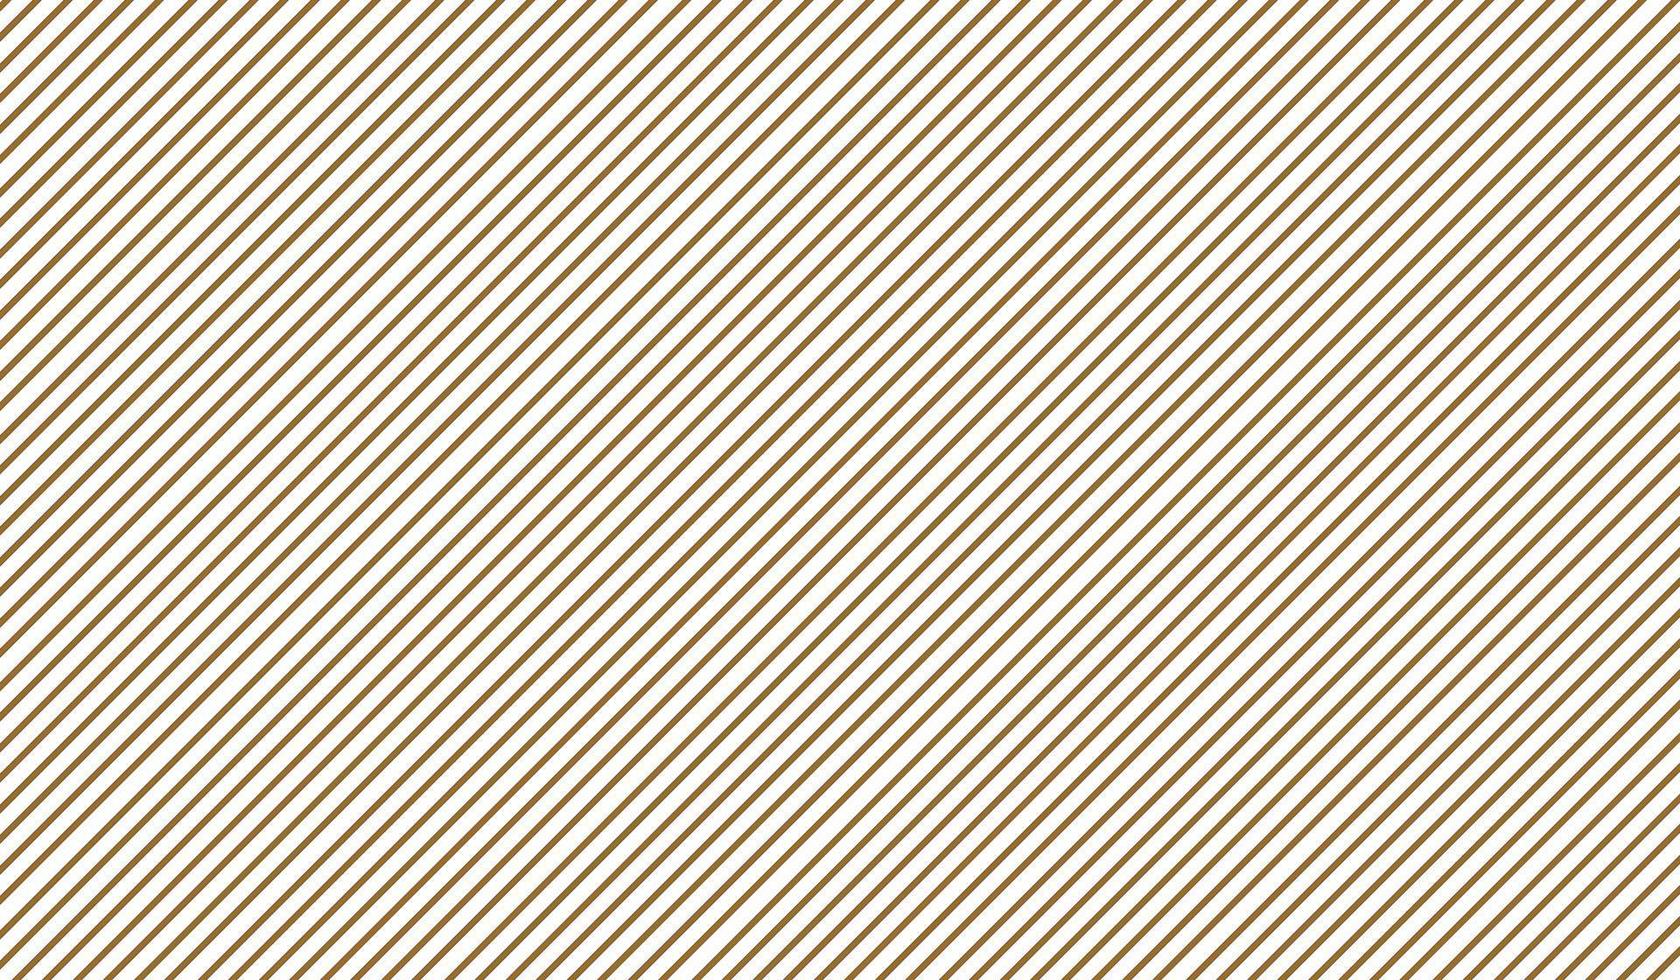 geometrisch gestreept patroon met doorlopende lijnen op een witte achtergrond. vector illustratie